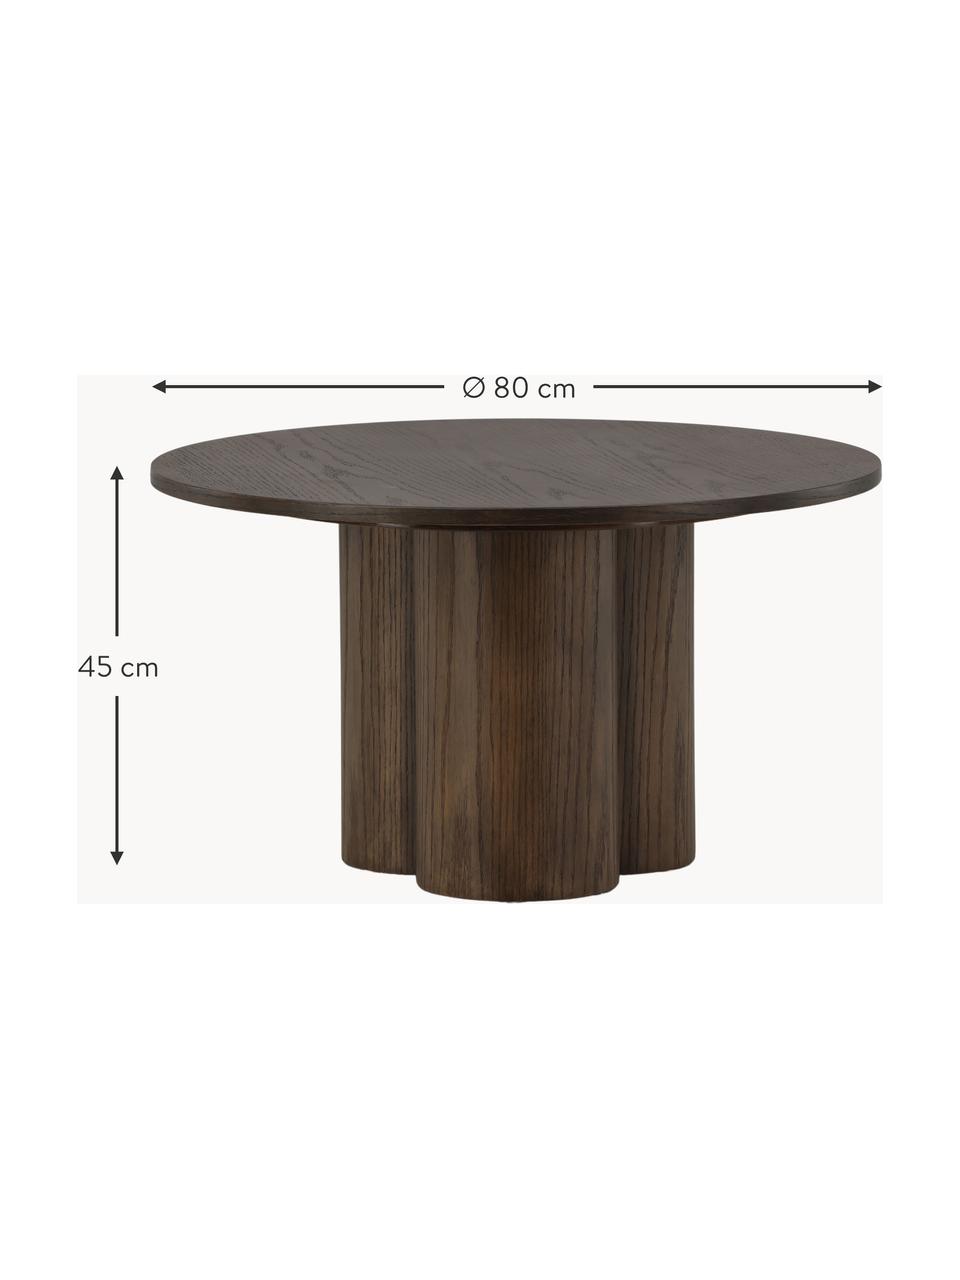 Kulatý dřevěný konferenční stolek Olivia, Dřevovláknitá deska střední hustoty (MDF) s dubovou dýhou, MDF deska (dřevovláknitá deska střední hustoty), tmavě lakovaný, Ø 80 cm